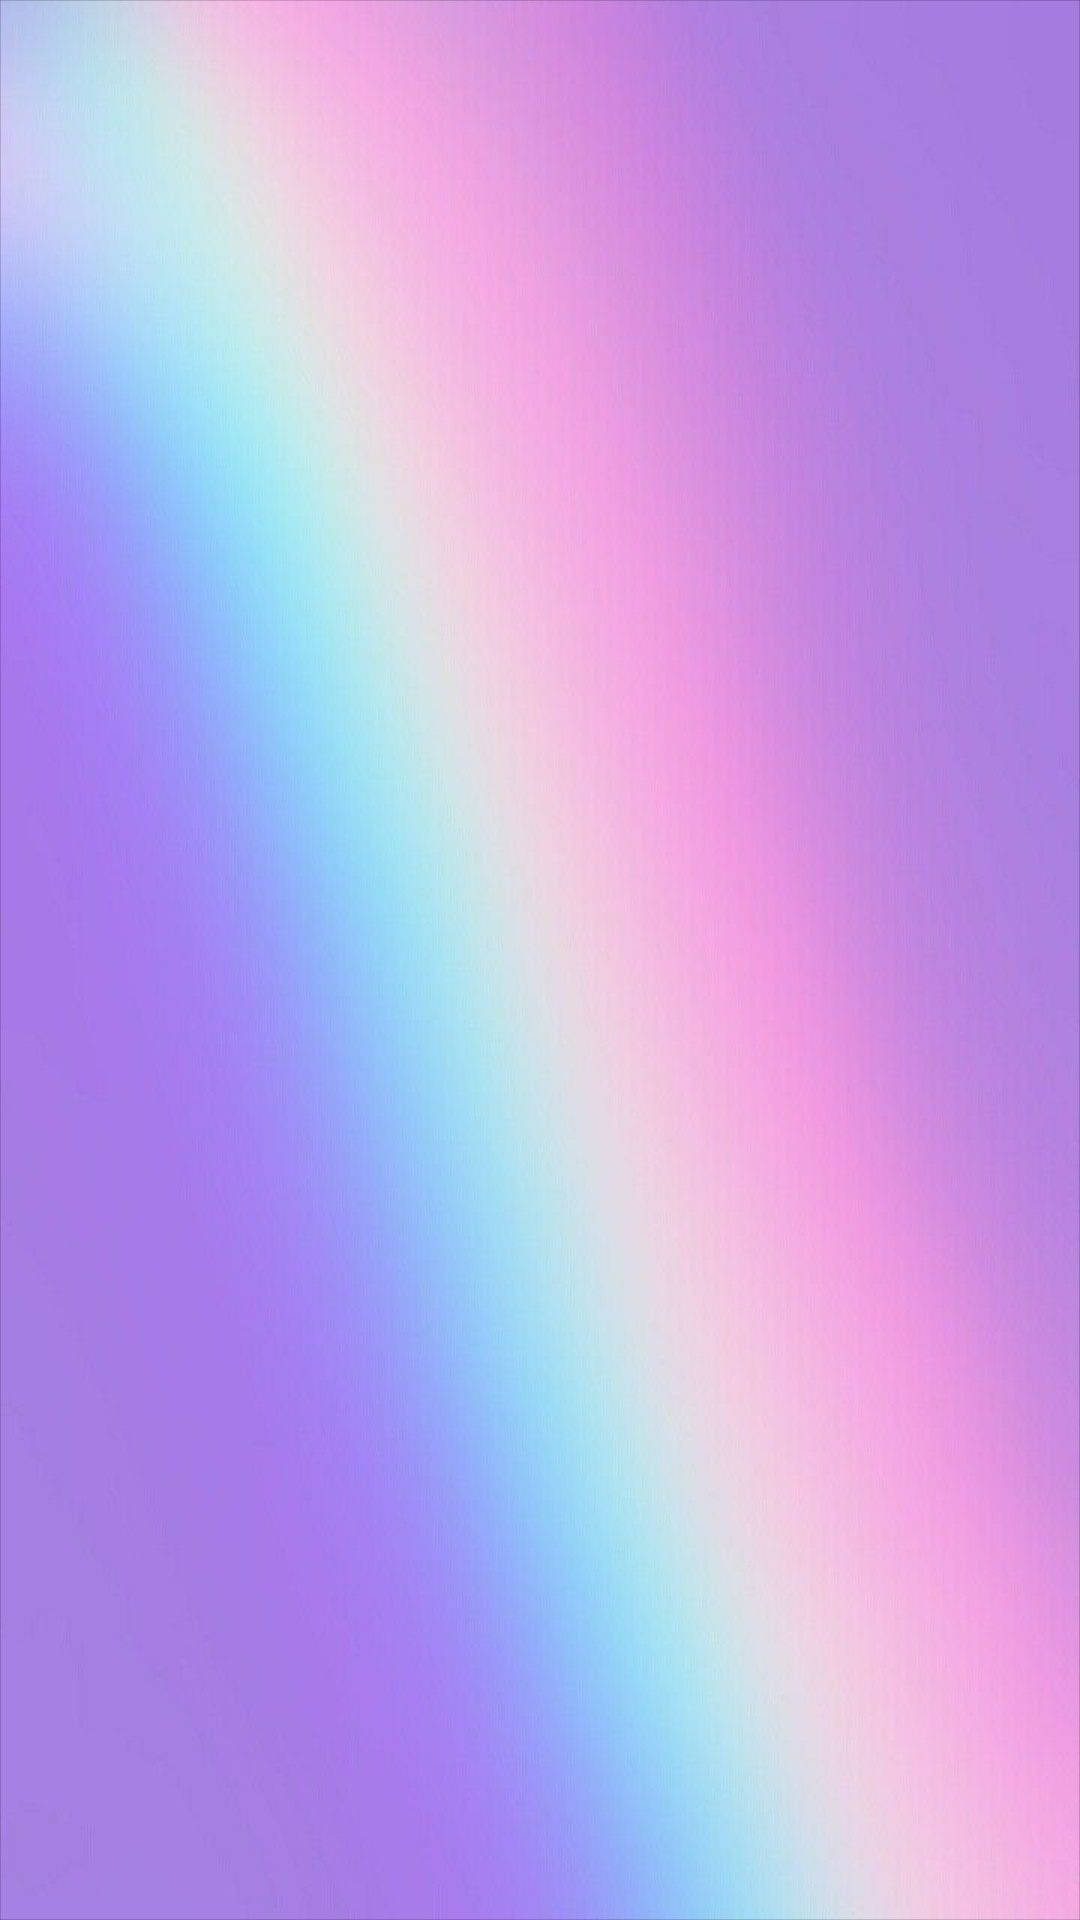 Holographic Foil Rainbow Color - Bạn có muốn thưởng thức bức ảnh đầy màu sắc và sáng tạo này không? Đây là hình ảnh cực kỳ ấn tượng với các dải màu cầu vồng được phủ bởi lớp cán màng mang đến vẻ đẹp bắt mắt đầy ấn tượng. Hãy nhấn vào để xem và cảm nhận sự tuyệt vời của nó! 